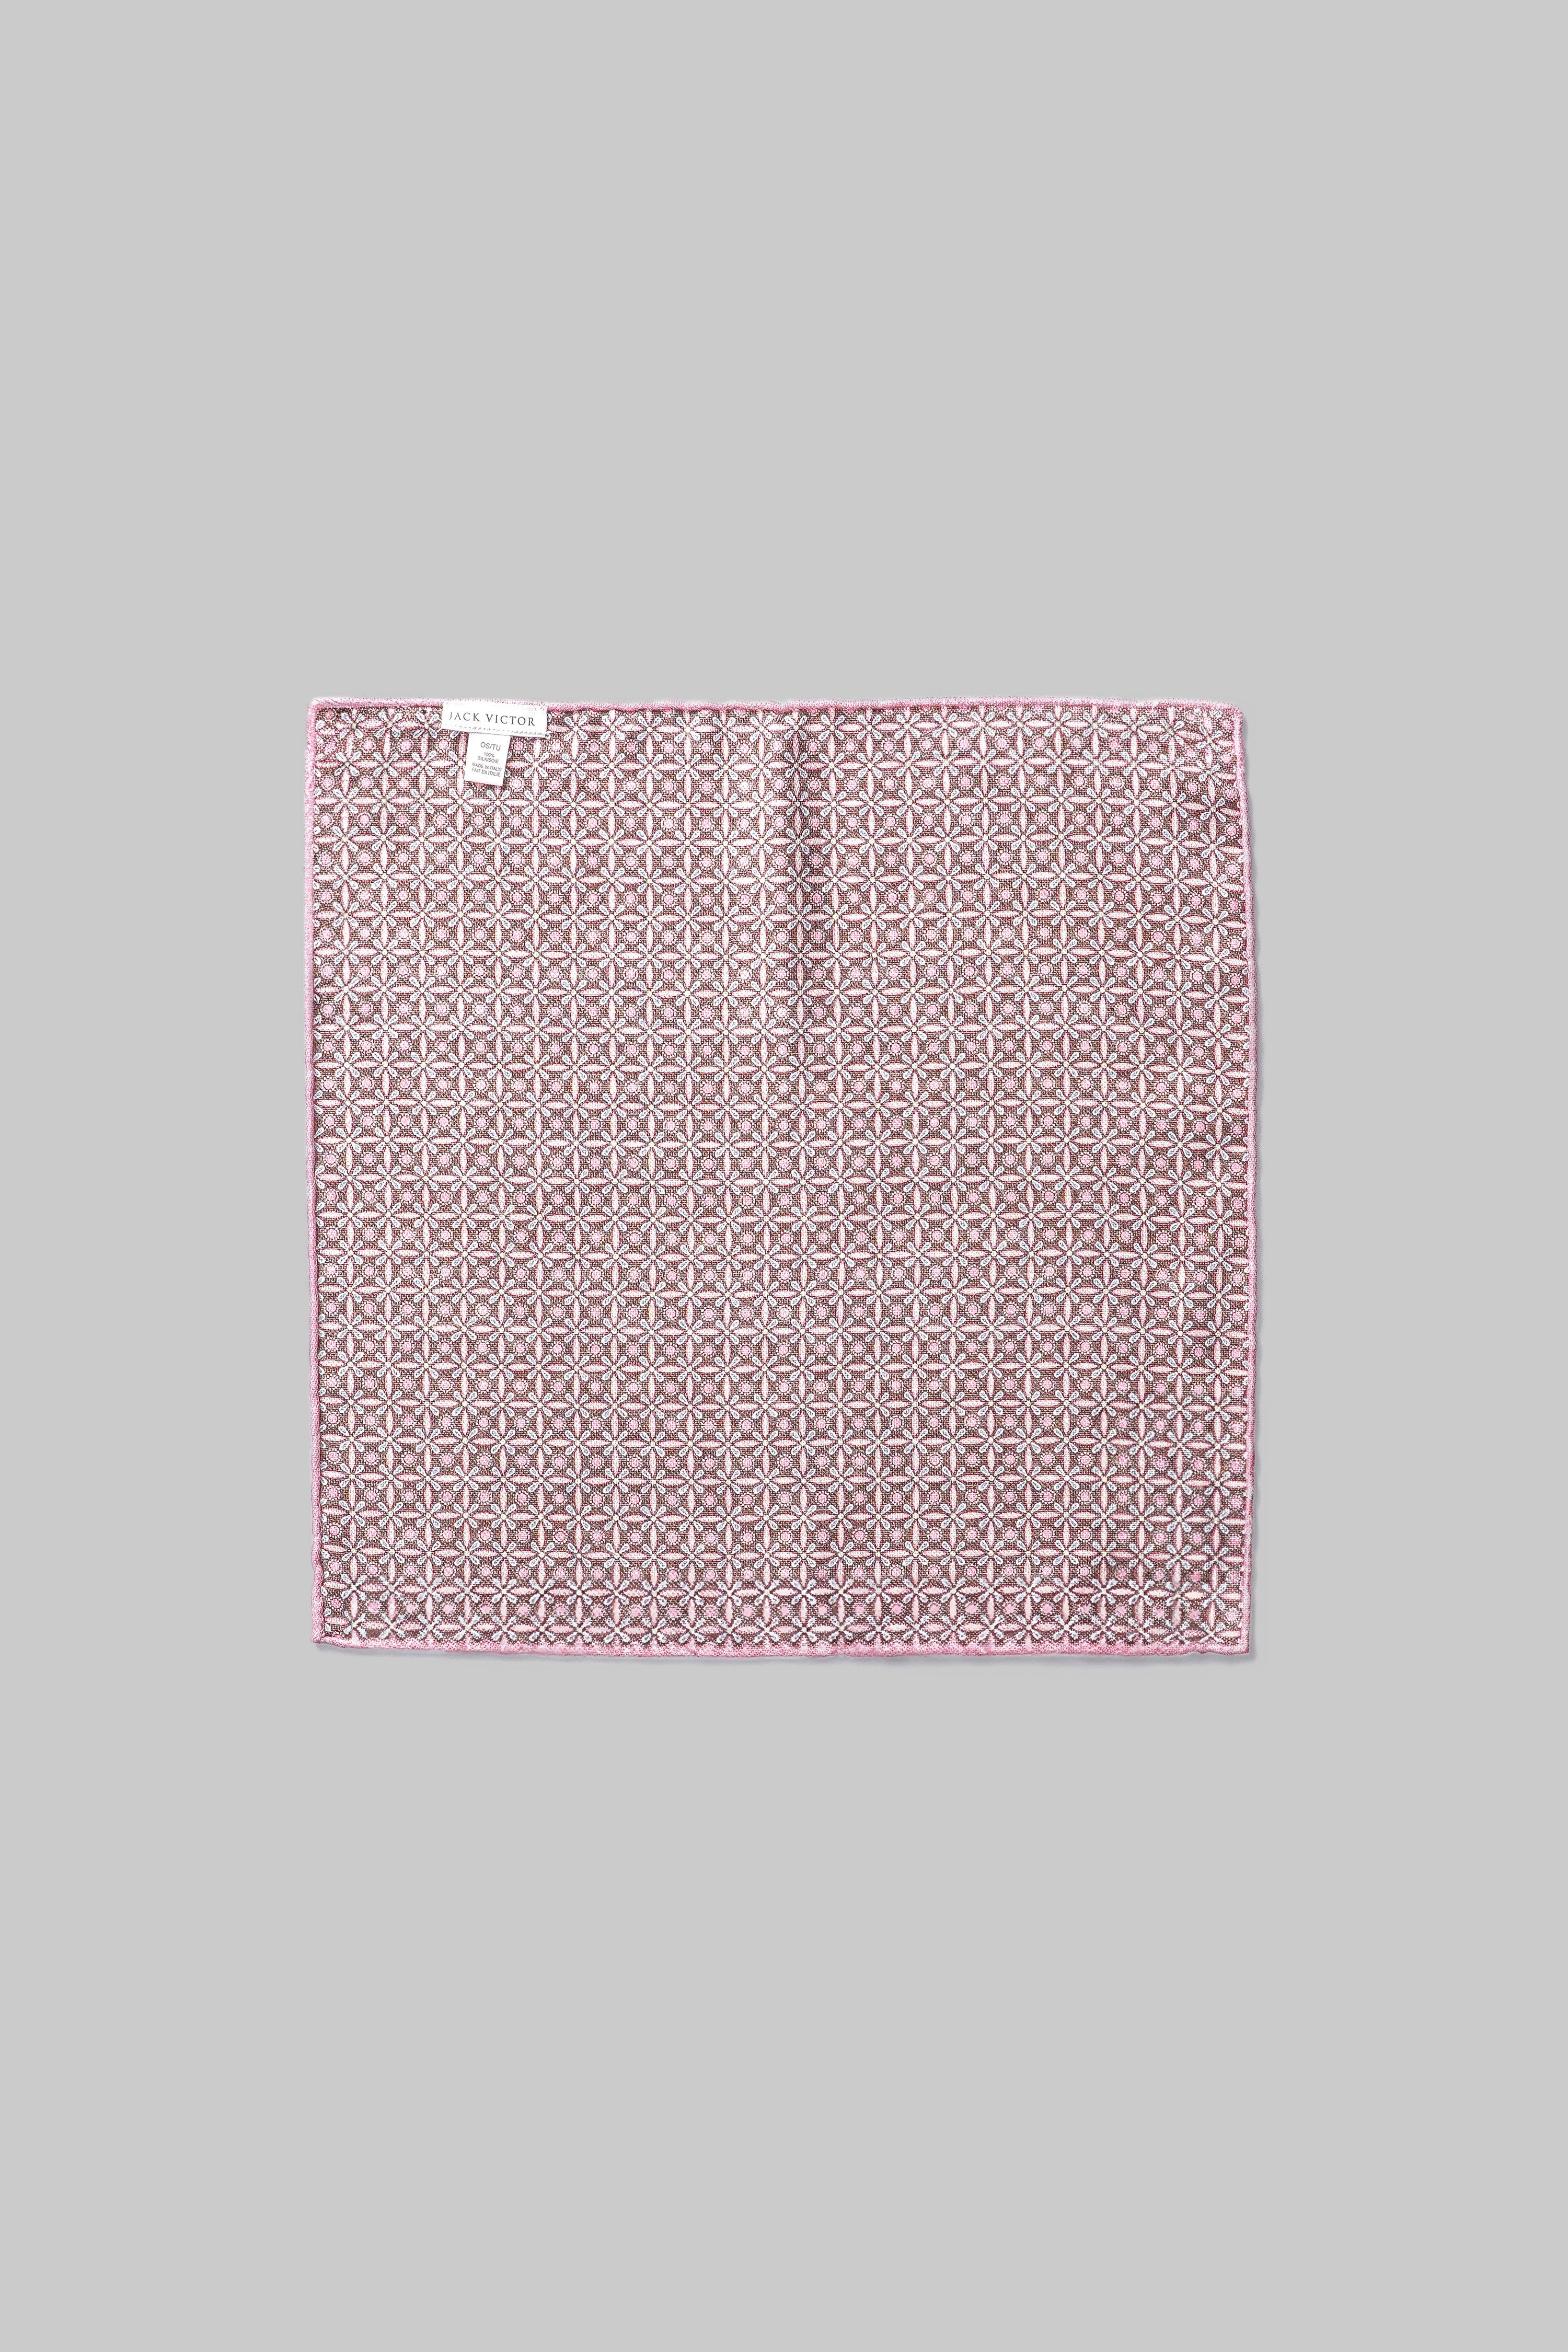 Vue alternative 1 Pochette de costume en soie rose à motif cachemire